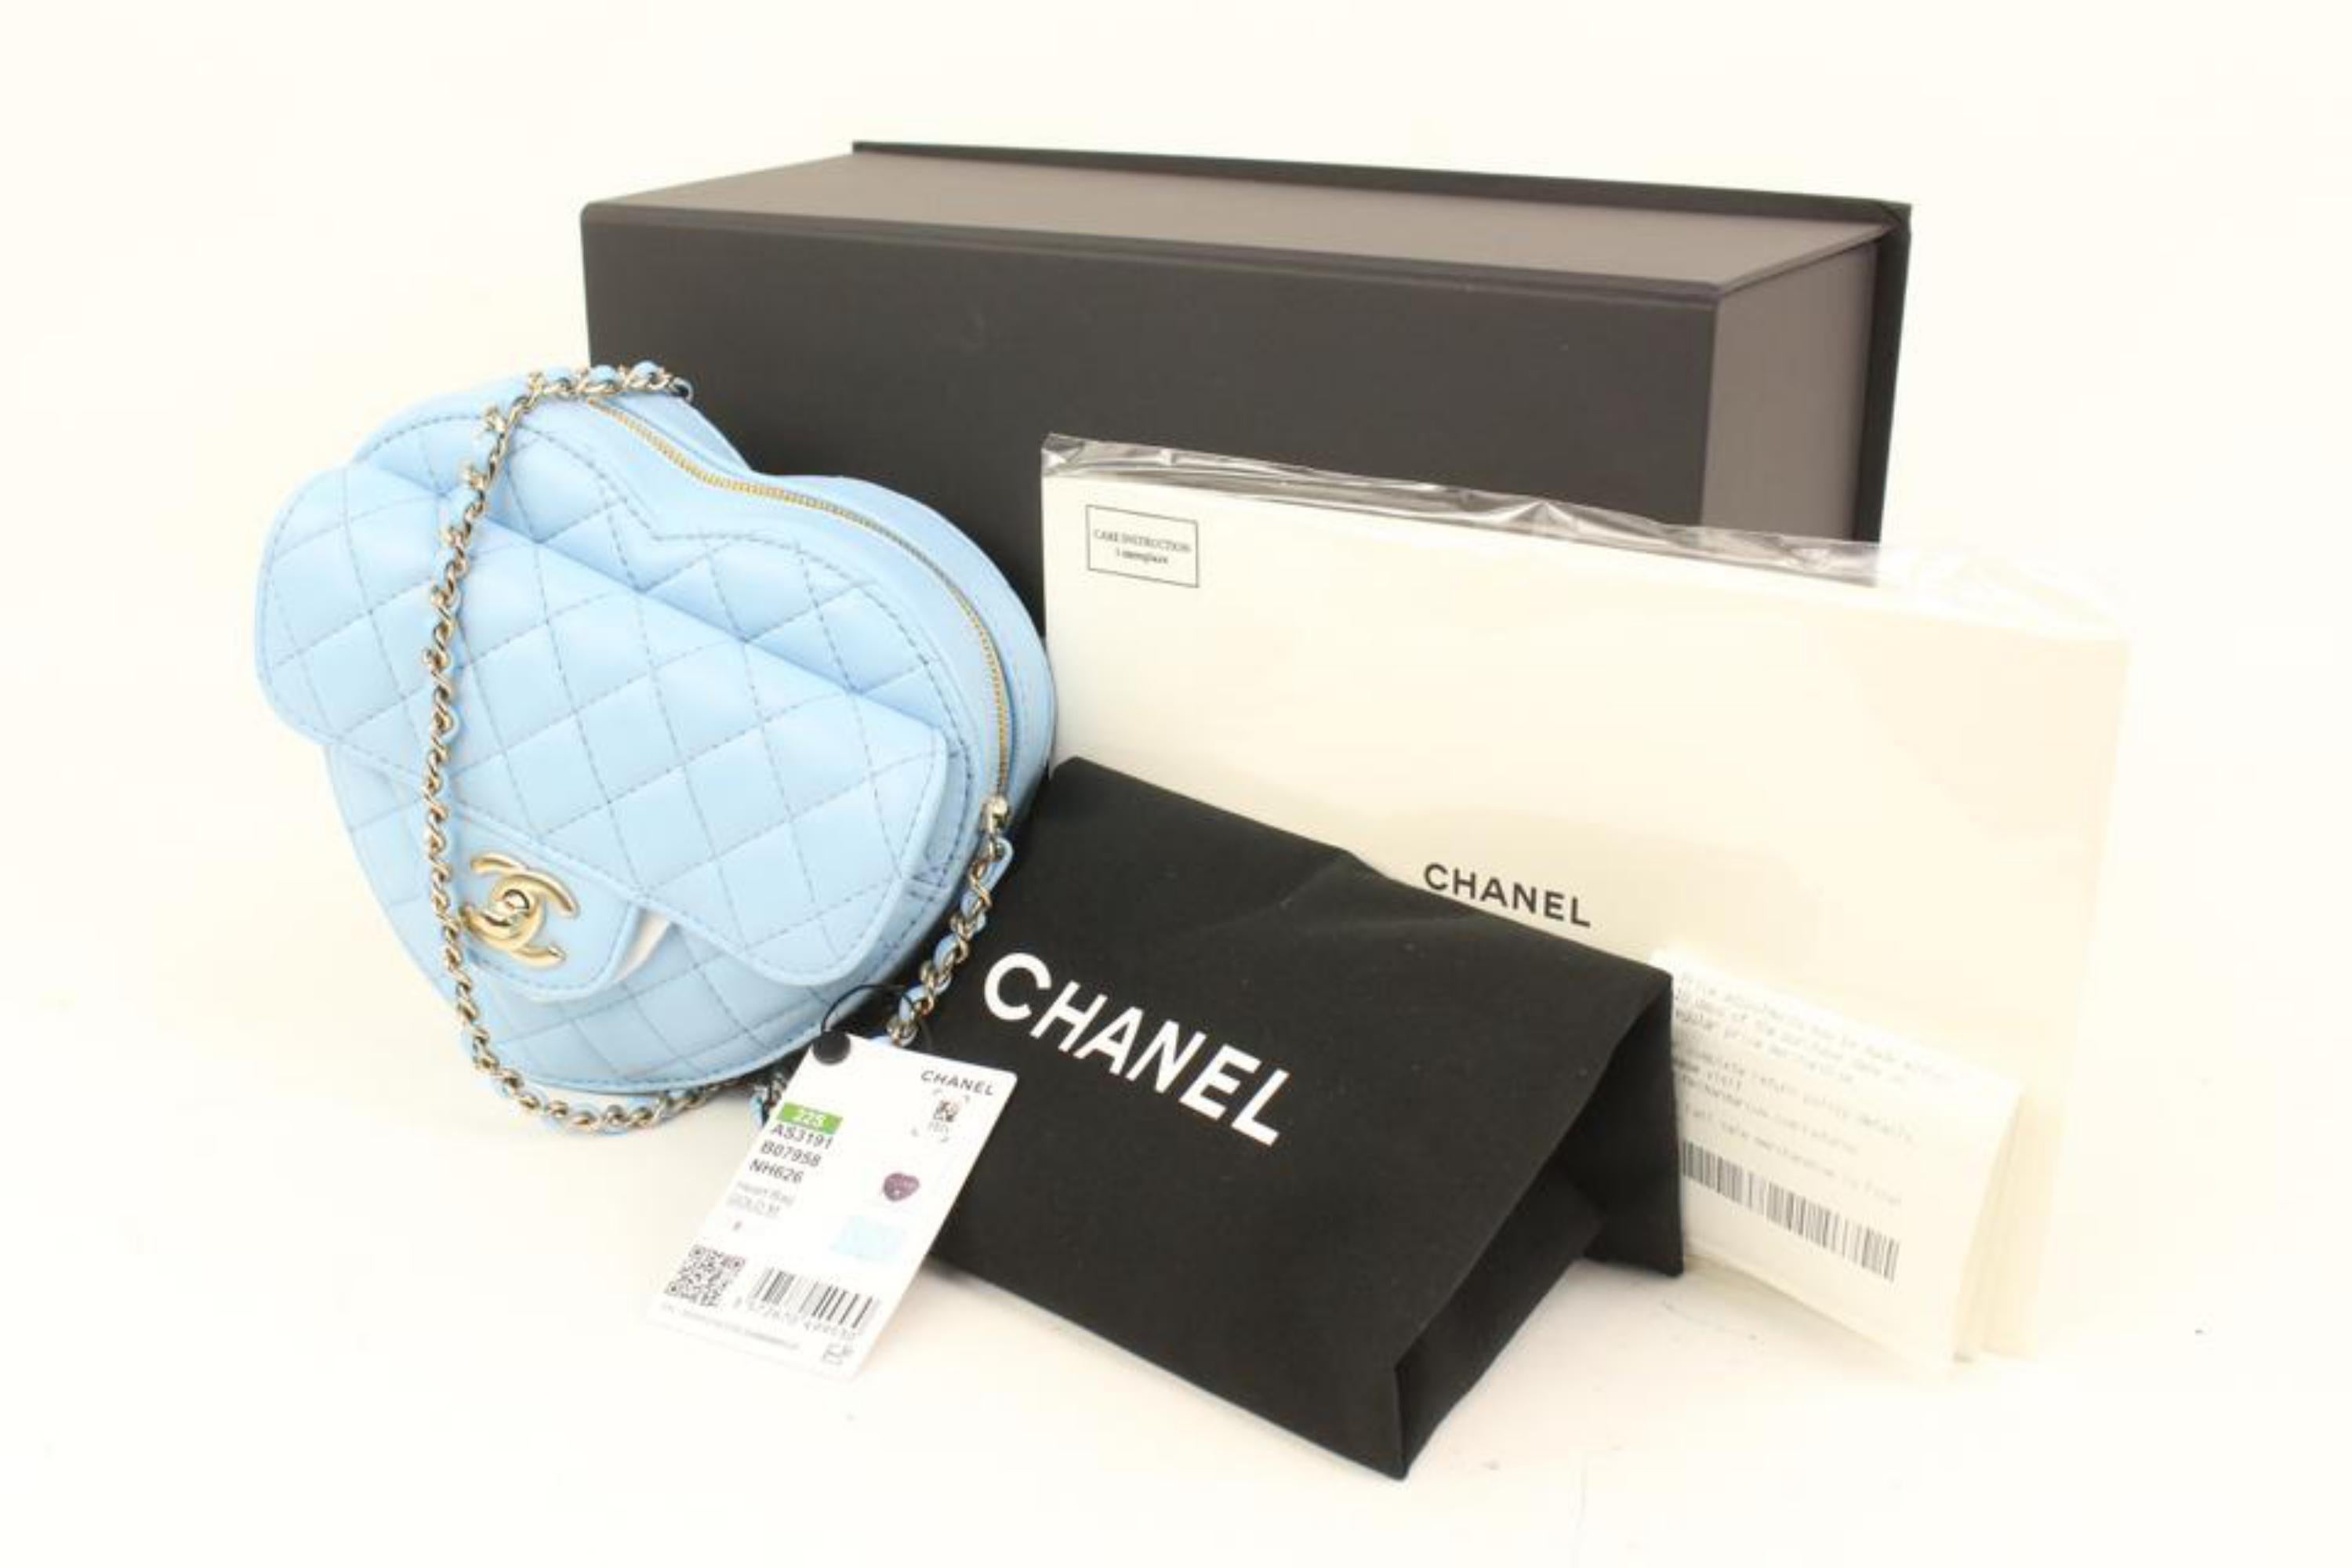 Chanel 22s Bleu en cuir d'agneau matelassé CC in Love Large Heart Bag GHW 10cz426s
Code de date/Numéro de série : KNHLPN6A
Fabriqué en : France
Mesures : Longueur :  7